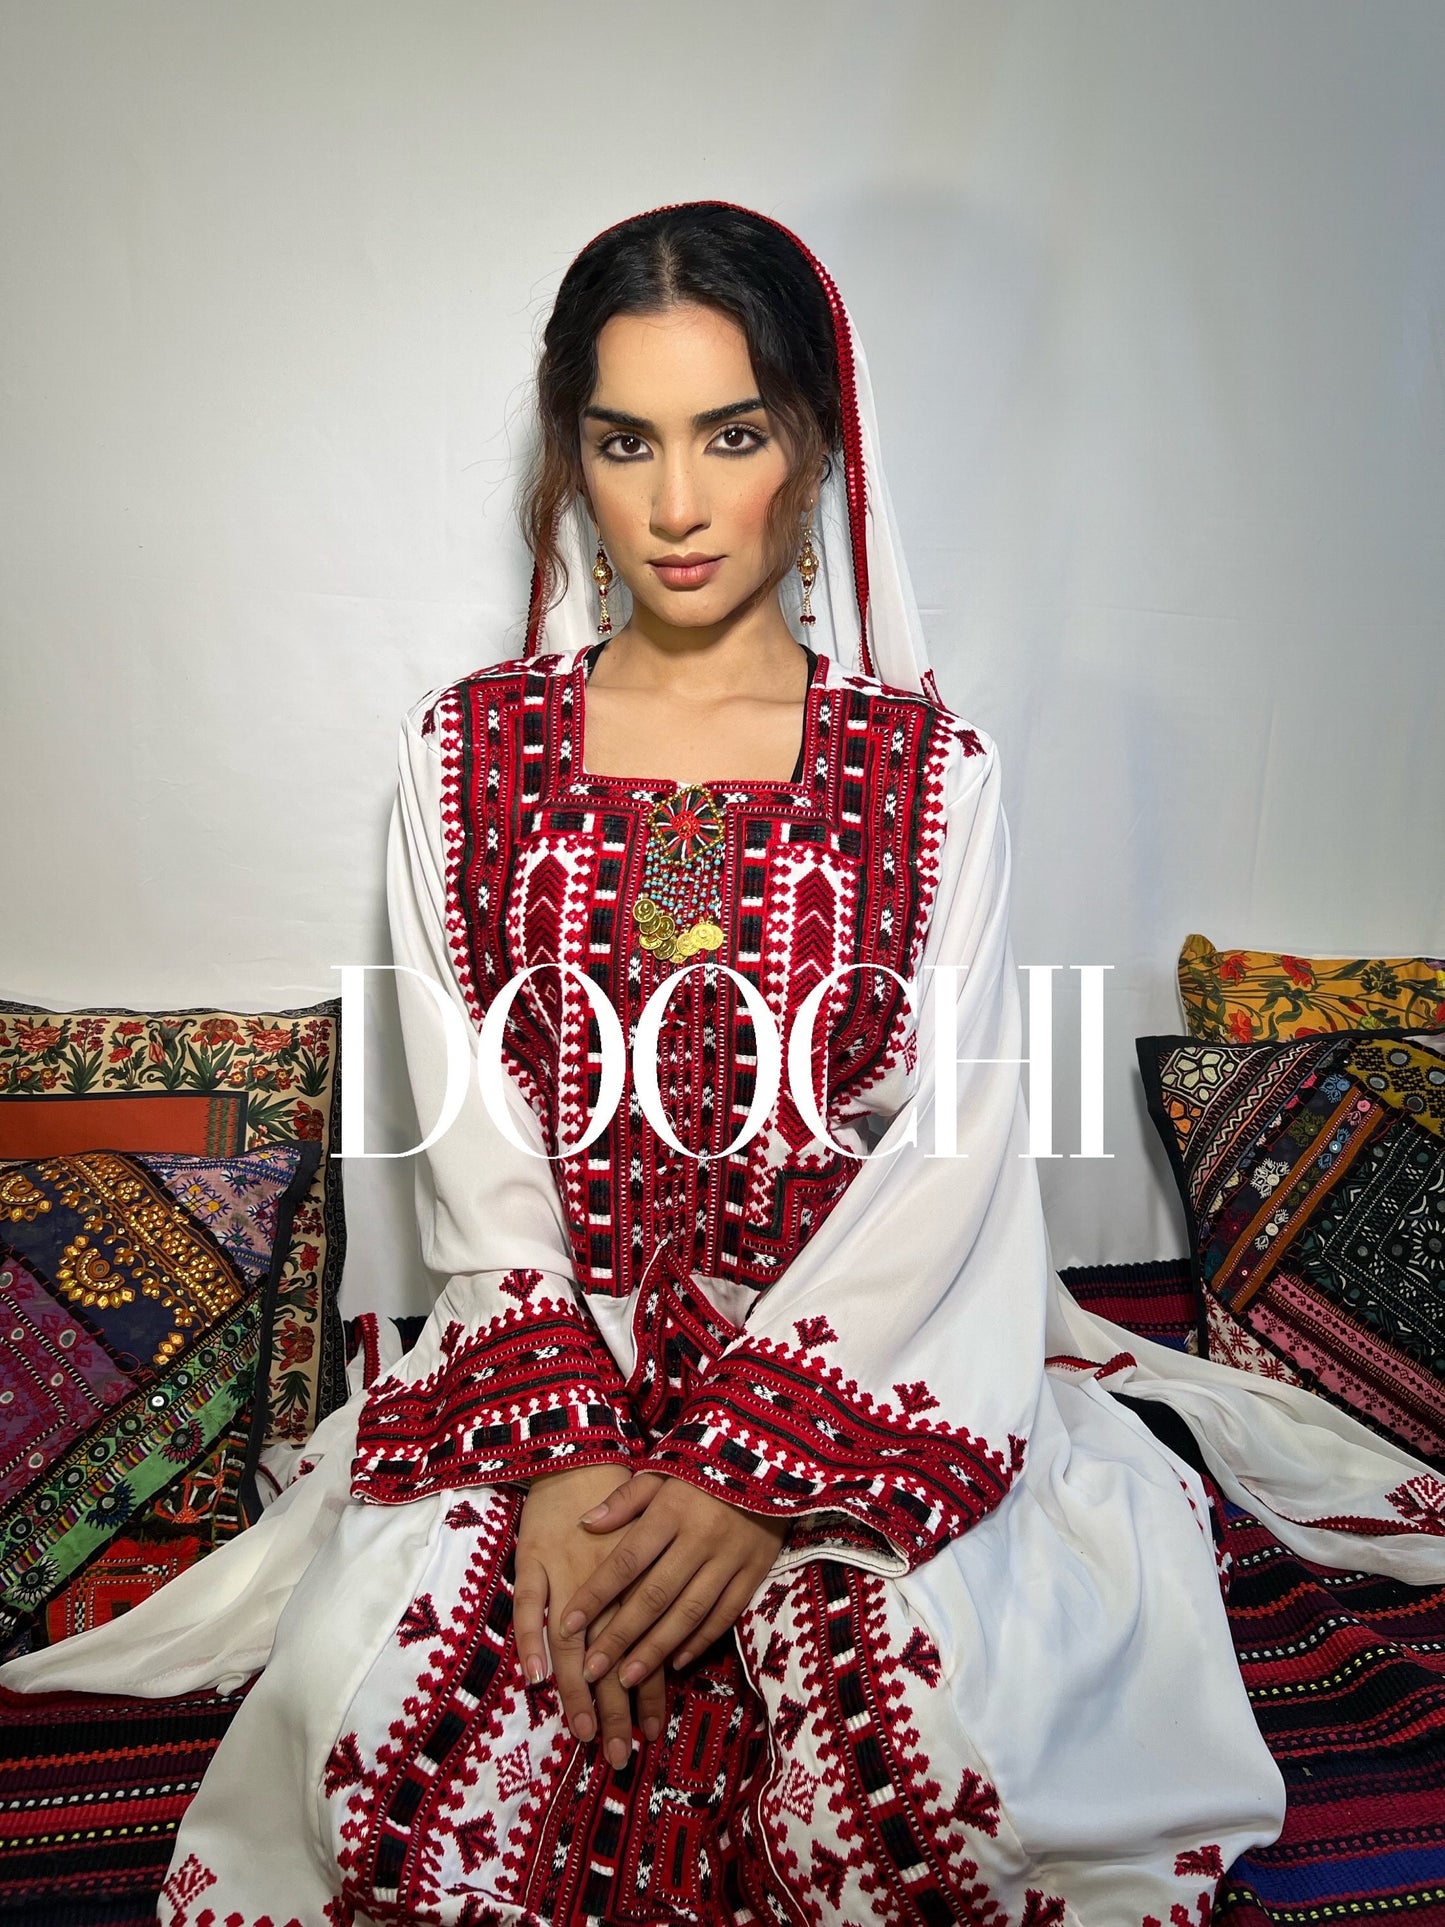 Authentic Ethnic Boho Baluchi Outfit